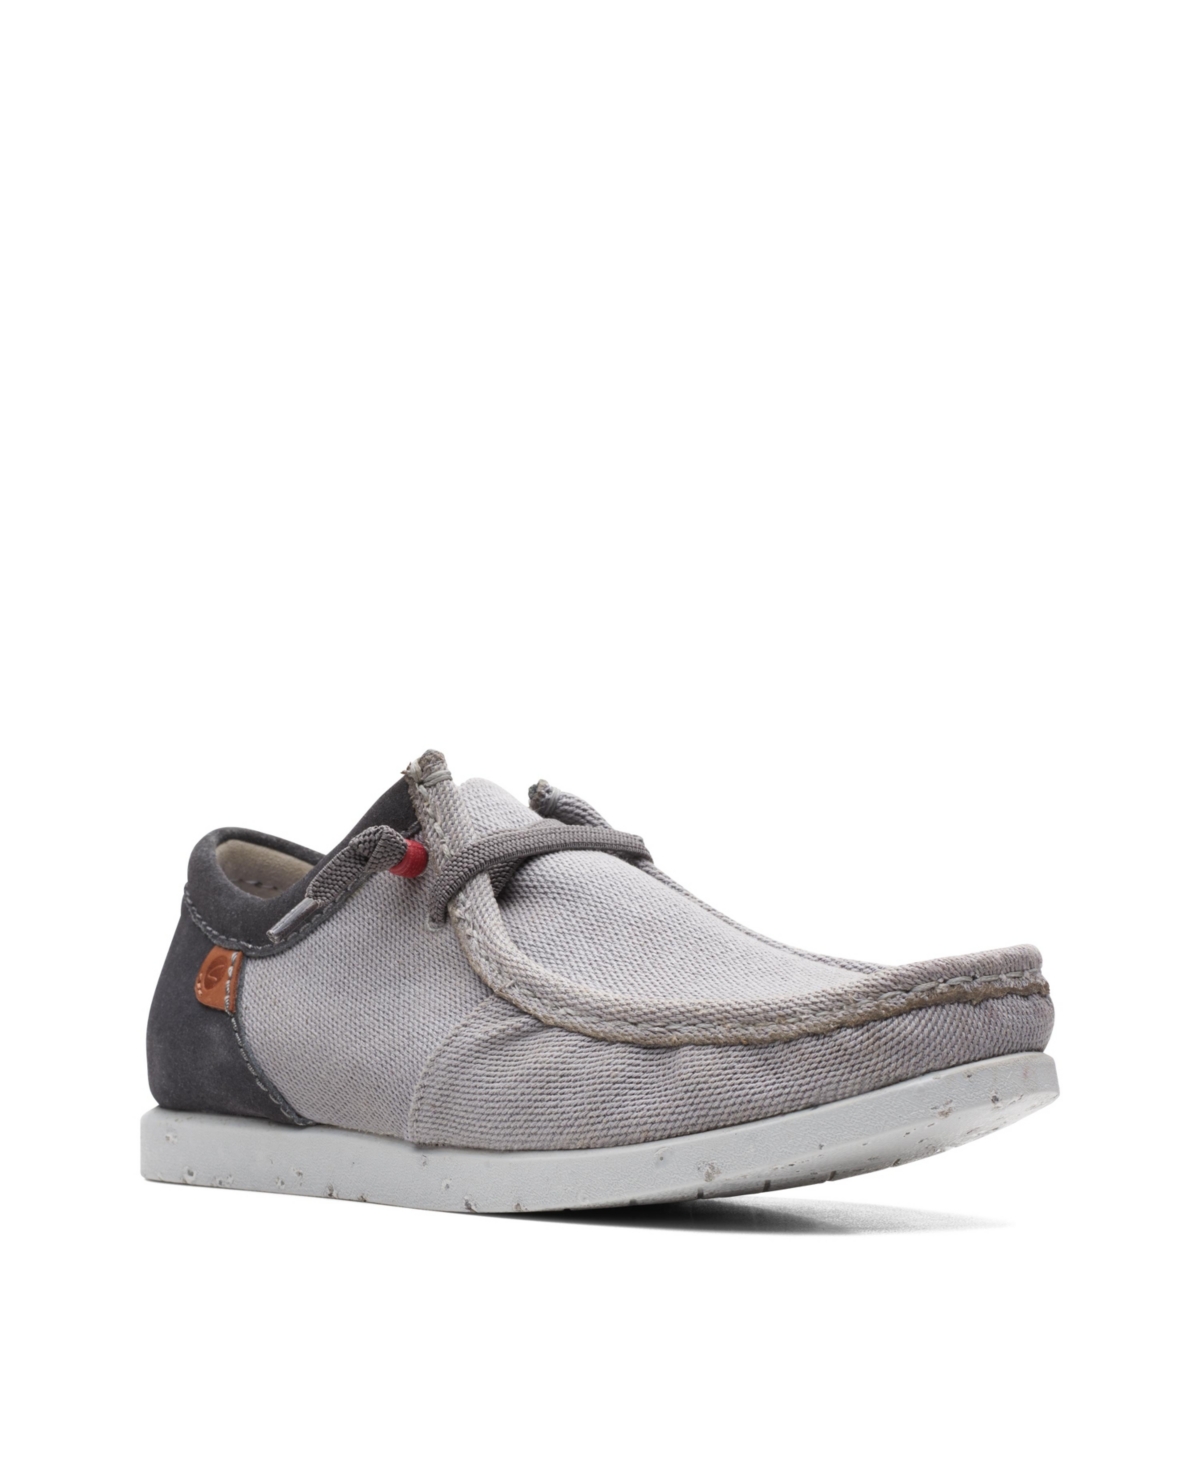 Clarks Men's Shacrelite Moc Comfort Shoes In Gray Combi